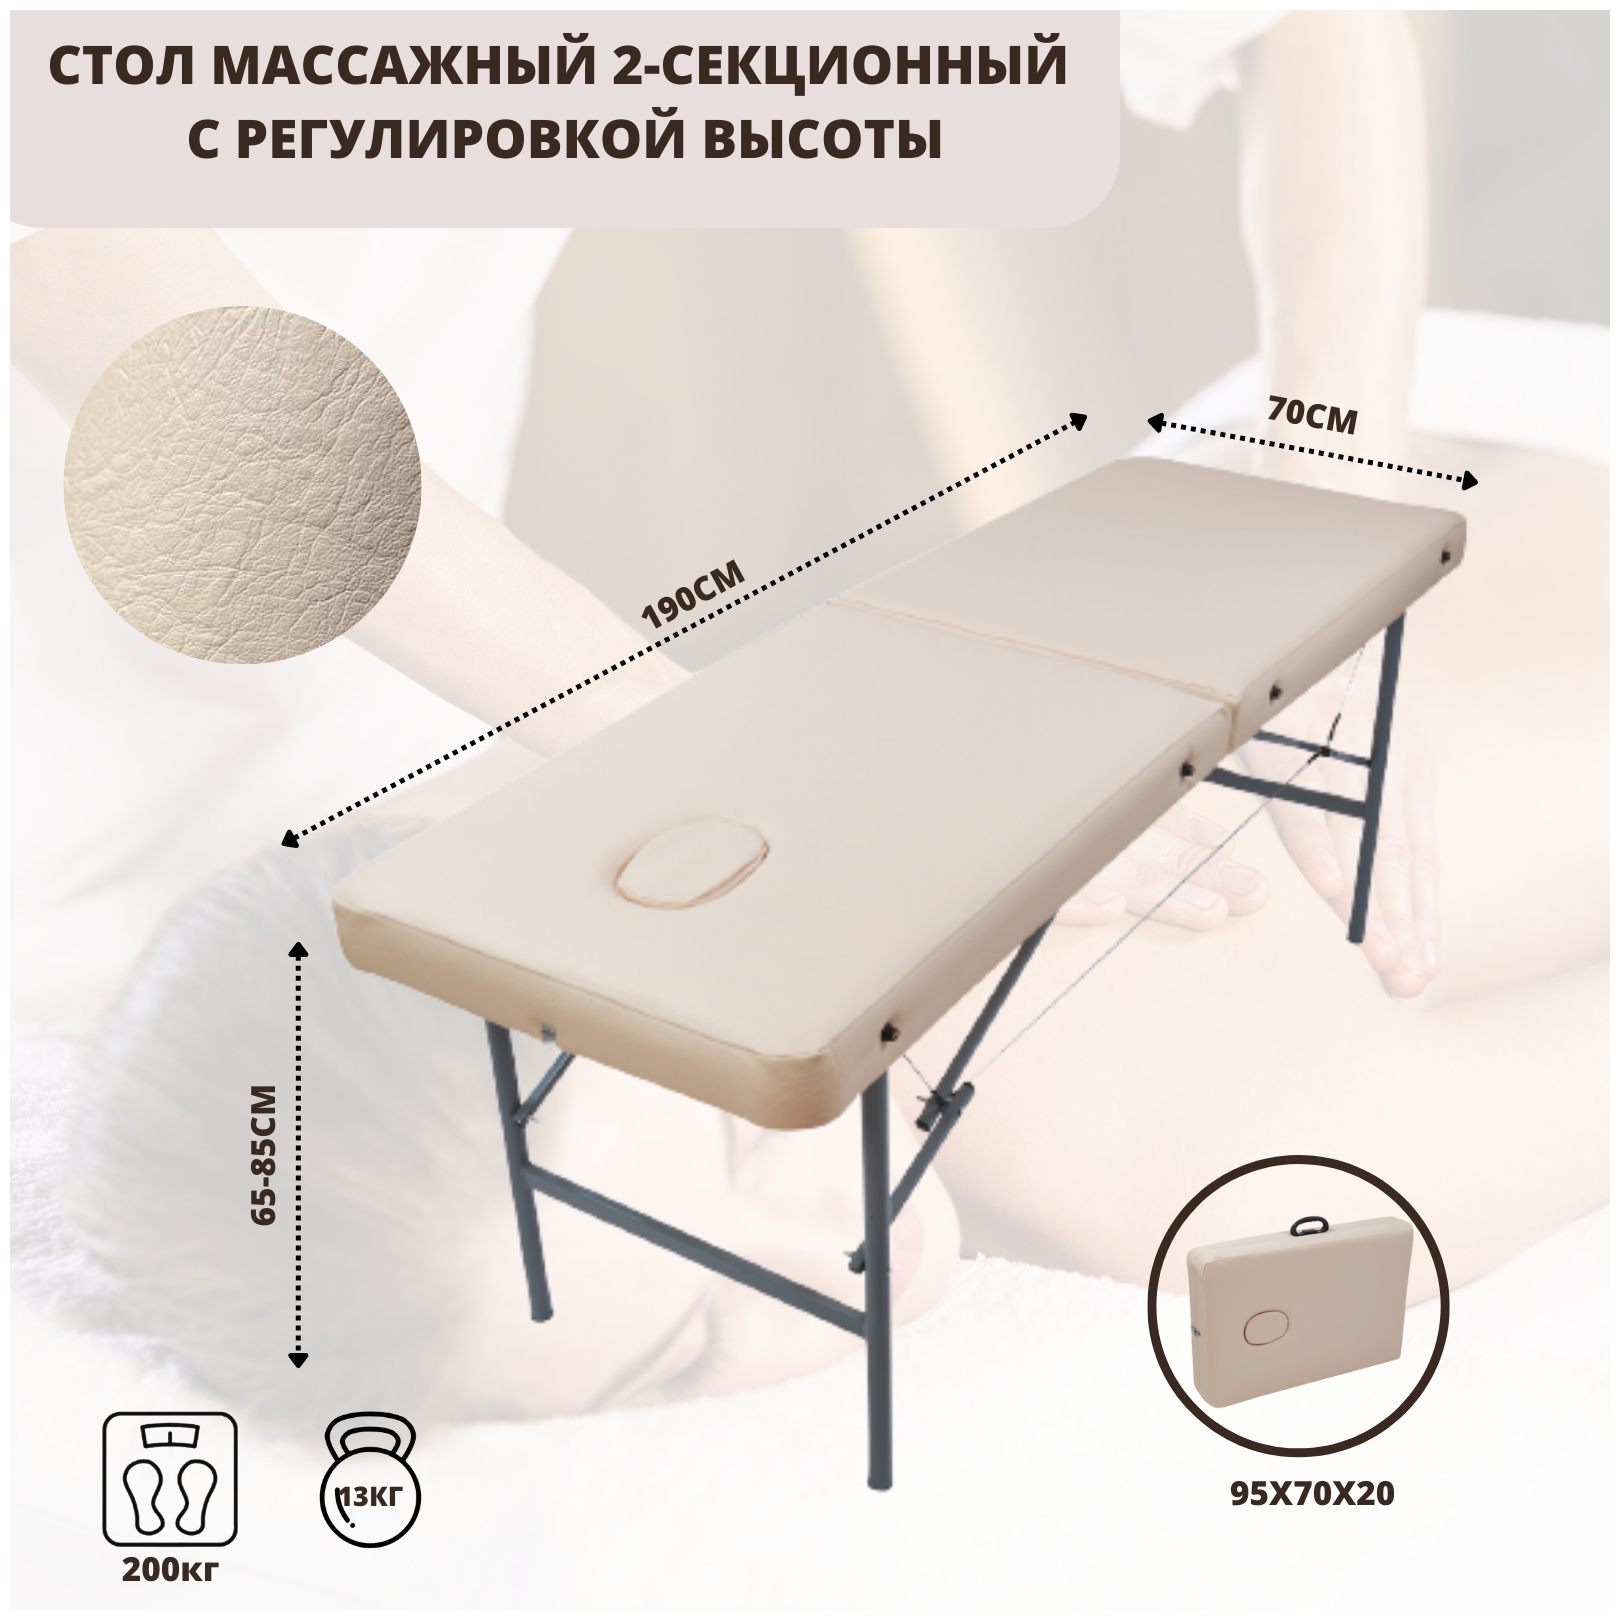 Складной массажный стол Mass R 190 массаж-продукт переносной с регулировкой двухсекционный кушетка косметологическа